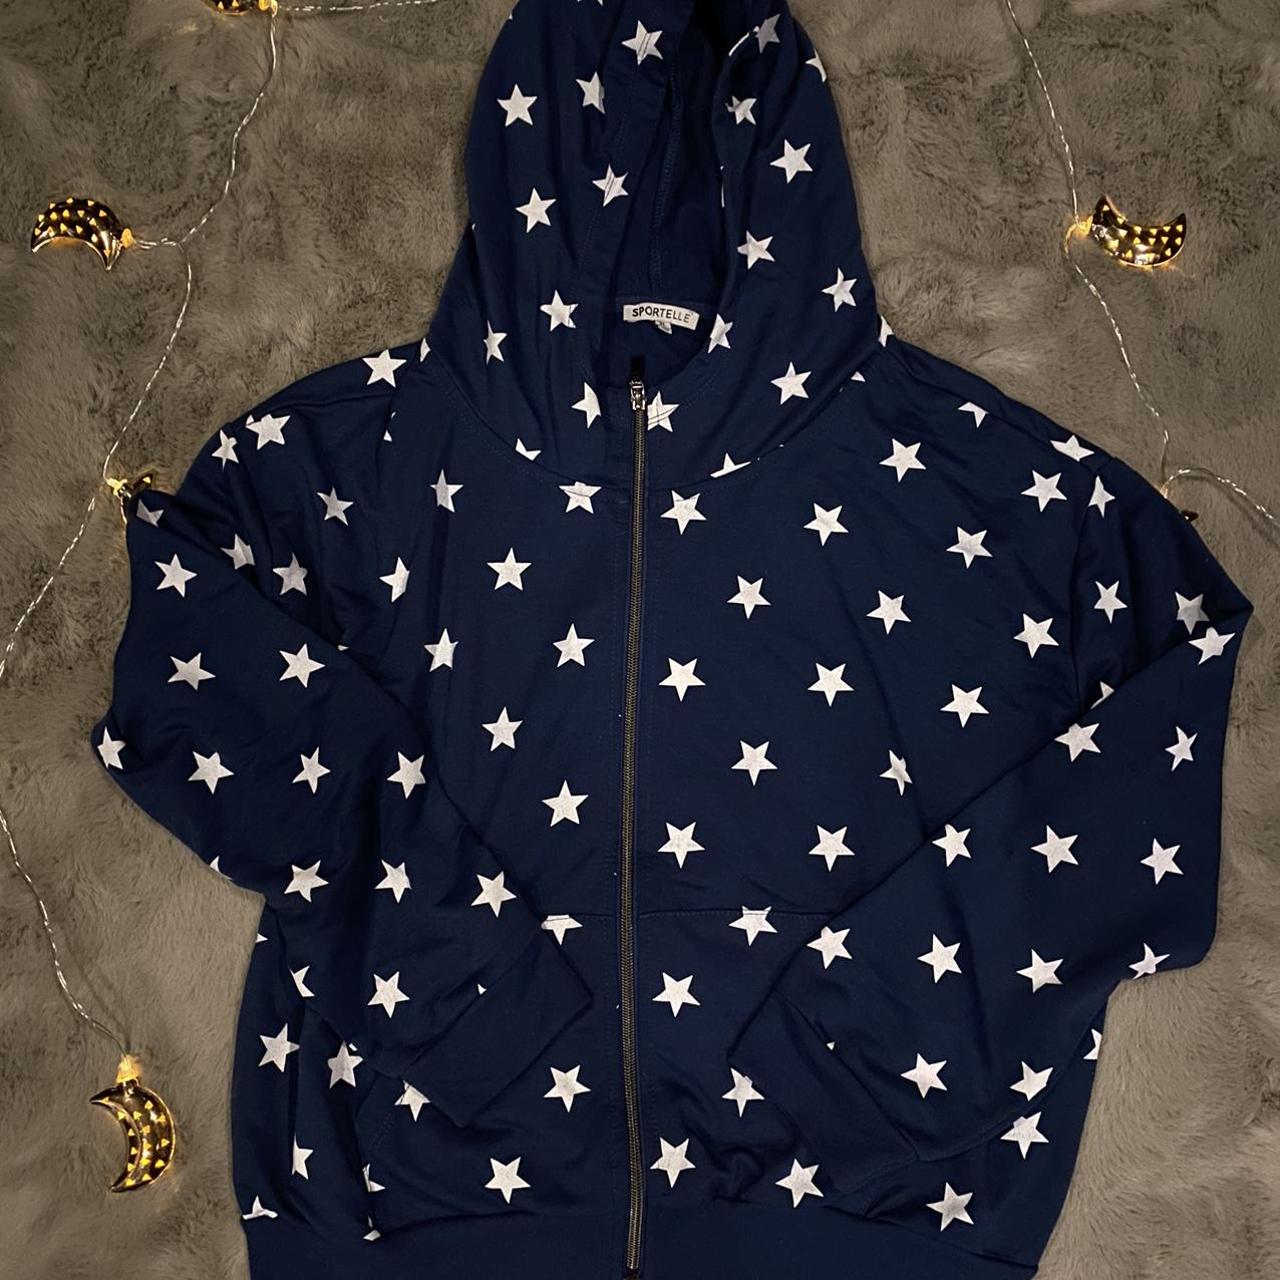 Oversized Coraline inspired star zip up hoodie... - Depop